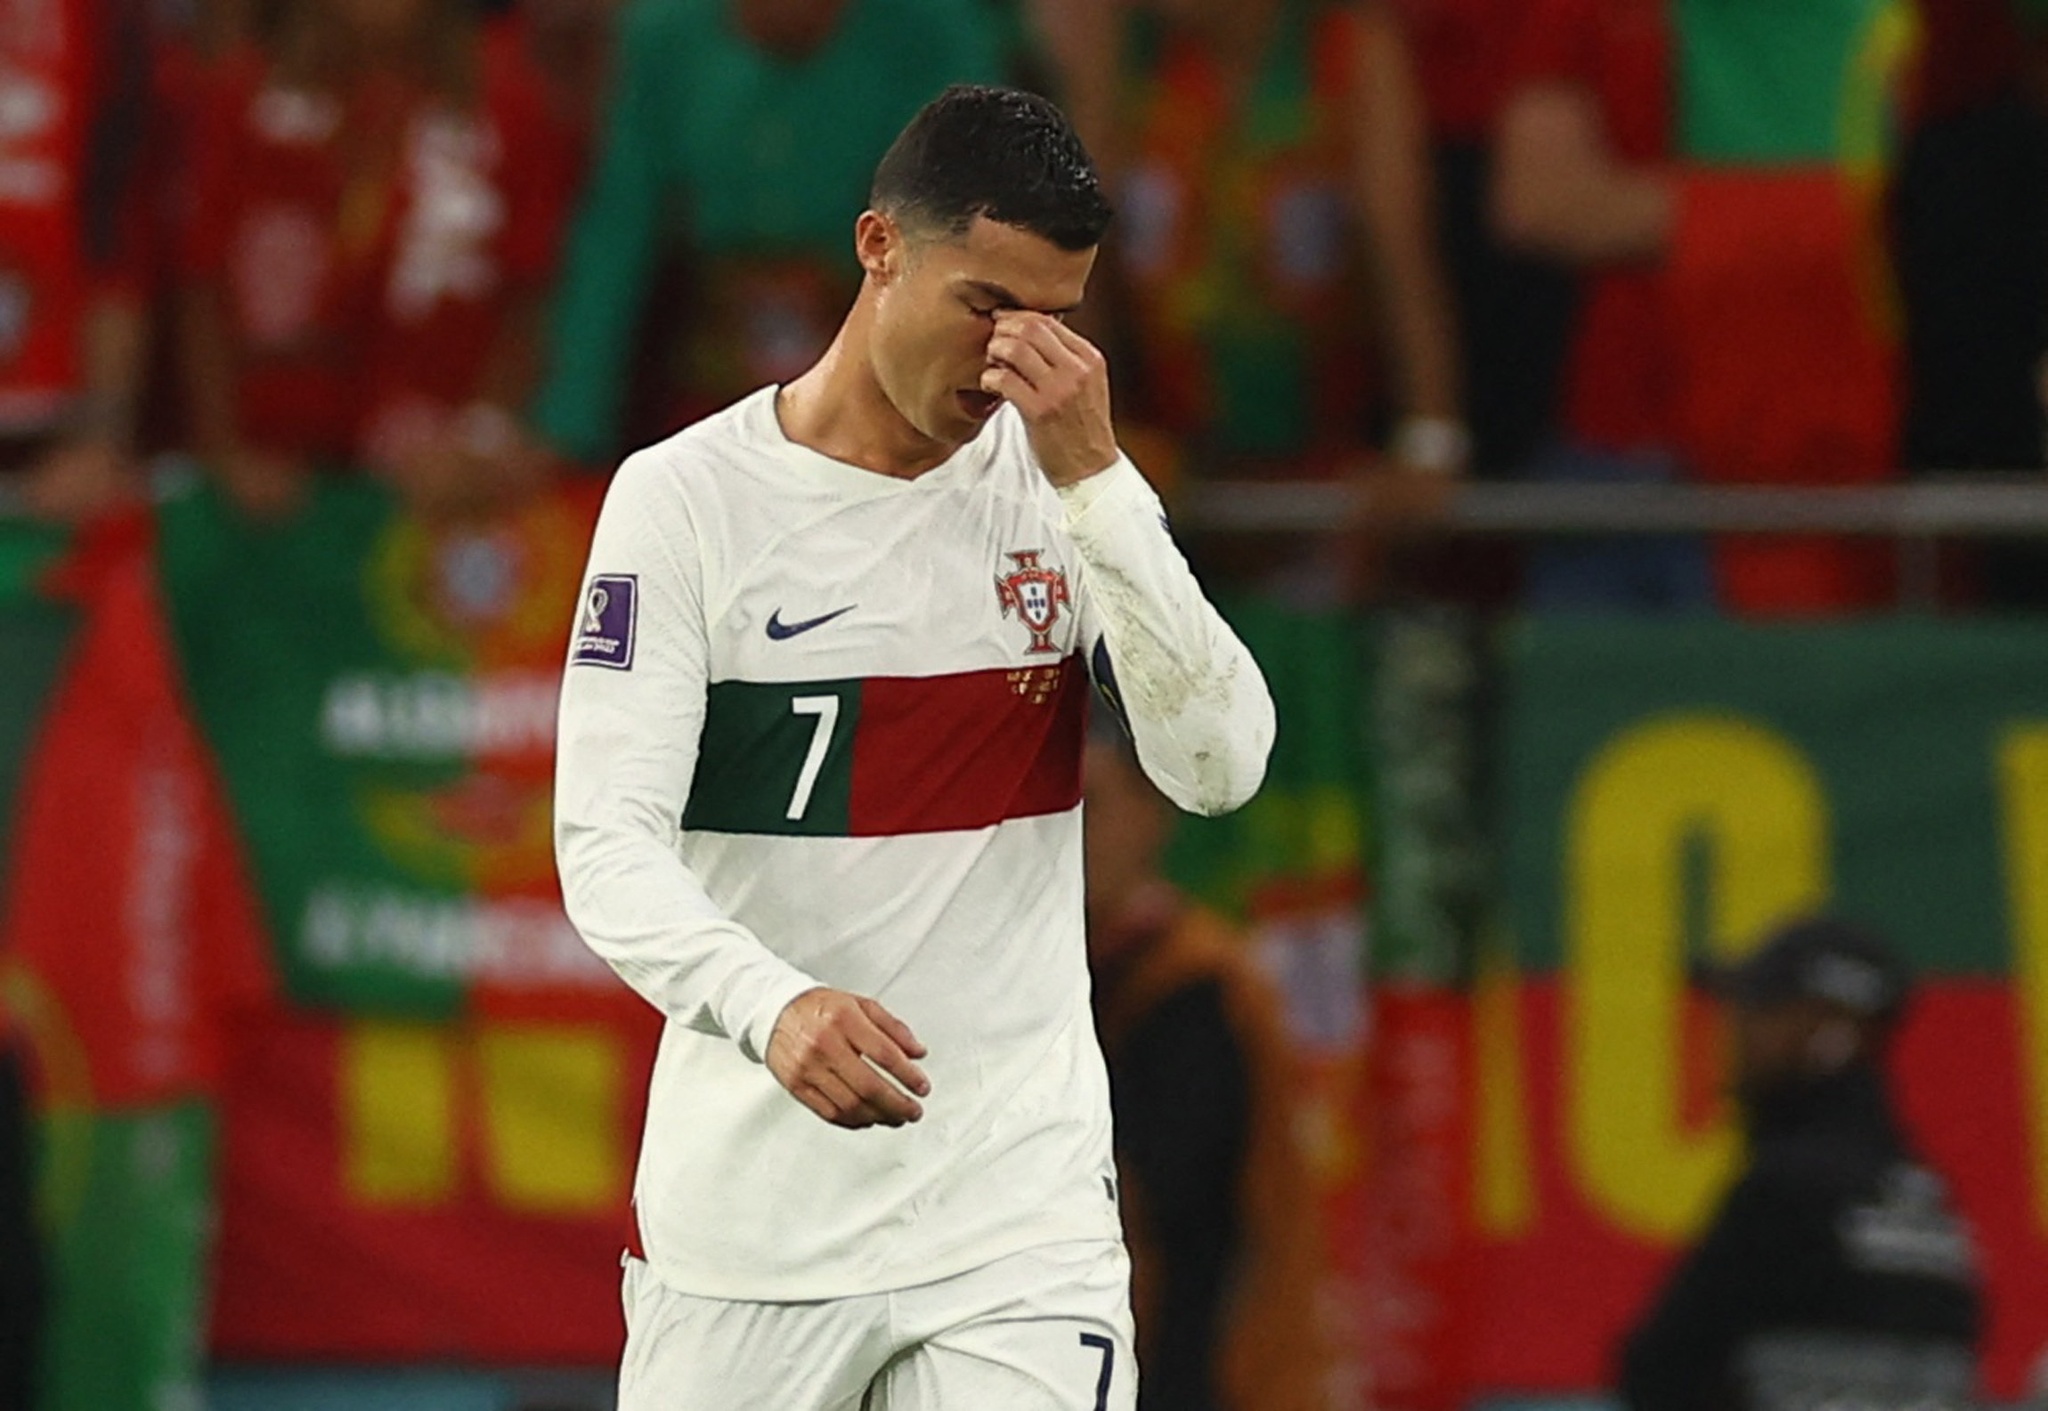 World Cup luôn là giải đấu được chú ý và mong đợi nhất trong làng bóng đá, vậy nên khi thất bại, cả tuyển và Ronaldo đều rơi vào cảm xúc thất vọng. Nhưng đó không phải là điều tiêu cực, mà là chất xúc tác để chúng ta cùng nhau trưởng thành và phấn đấu hơn. Hãy xem ảnh Ronaldo khóc tại World Cup, để cảm nhận tất cả những sự kiện đáng nhớ trong cuộc thi đấu này.